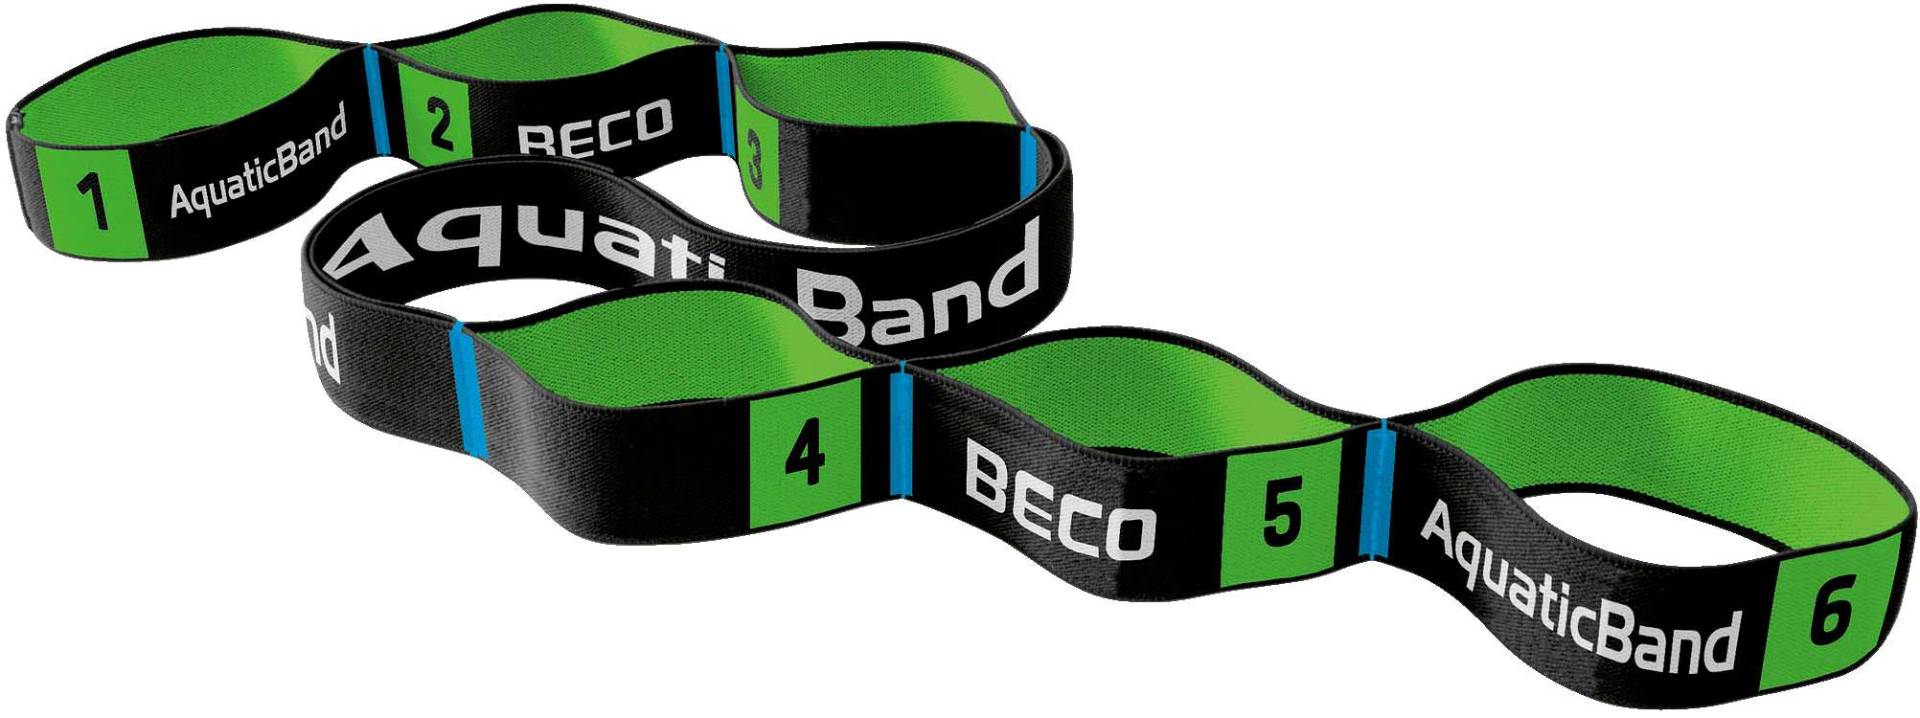 Beco Aqua-Elastikband "AquaticBand" von Beco